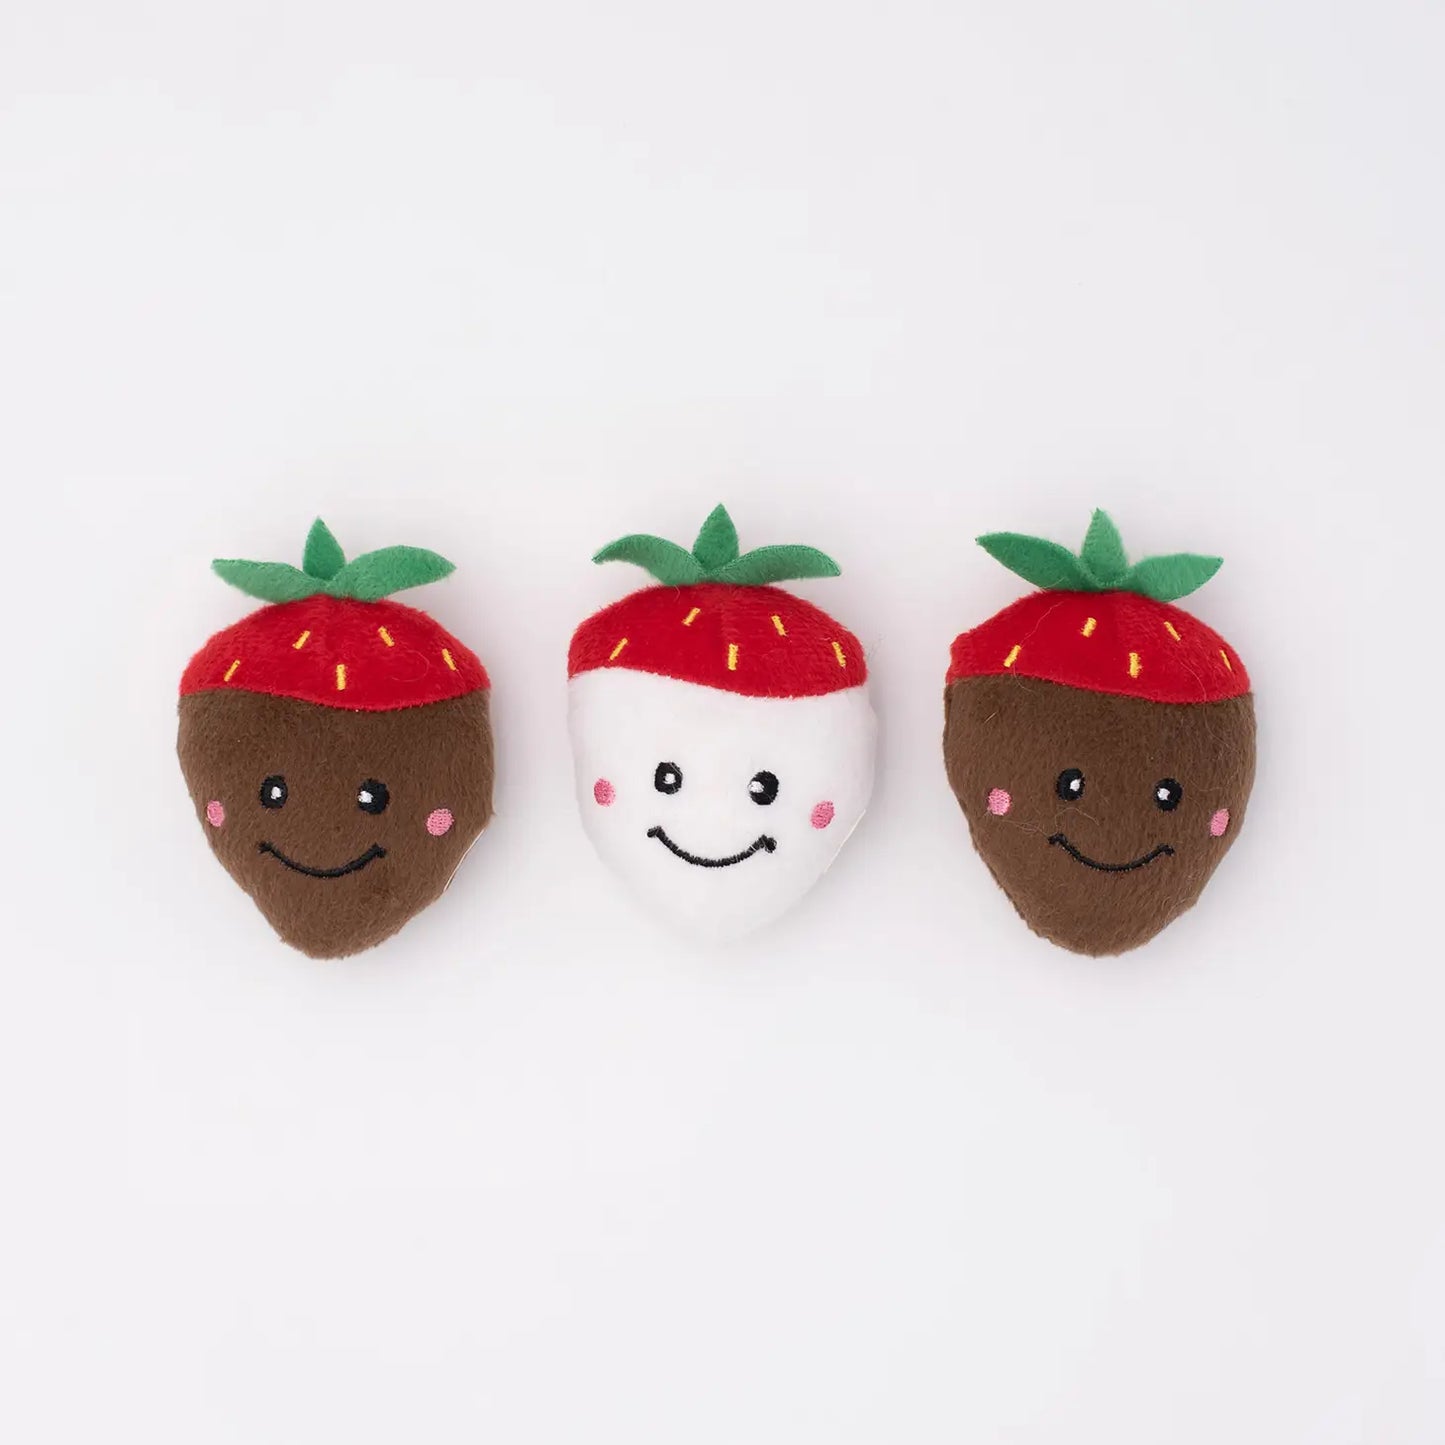 "Zippy Paws" Valentine's Miniz 3-Pack Chocolate Covered Strawberries